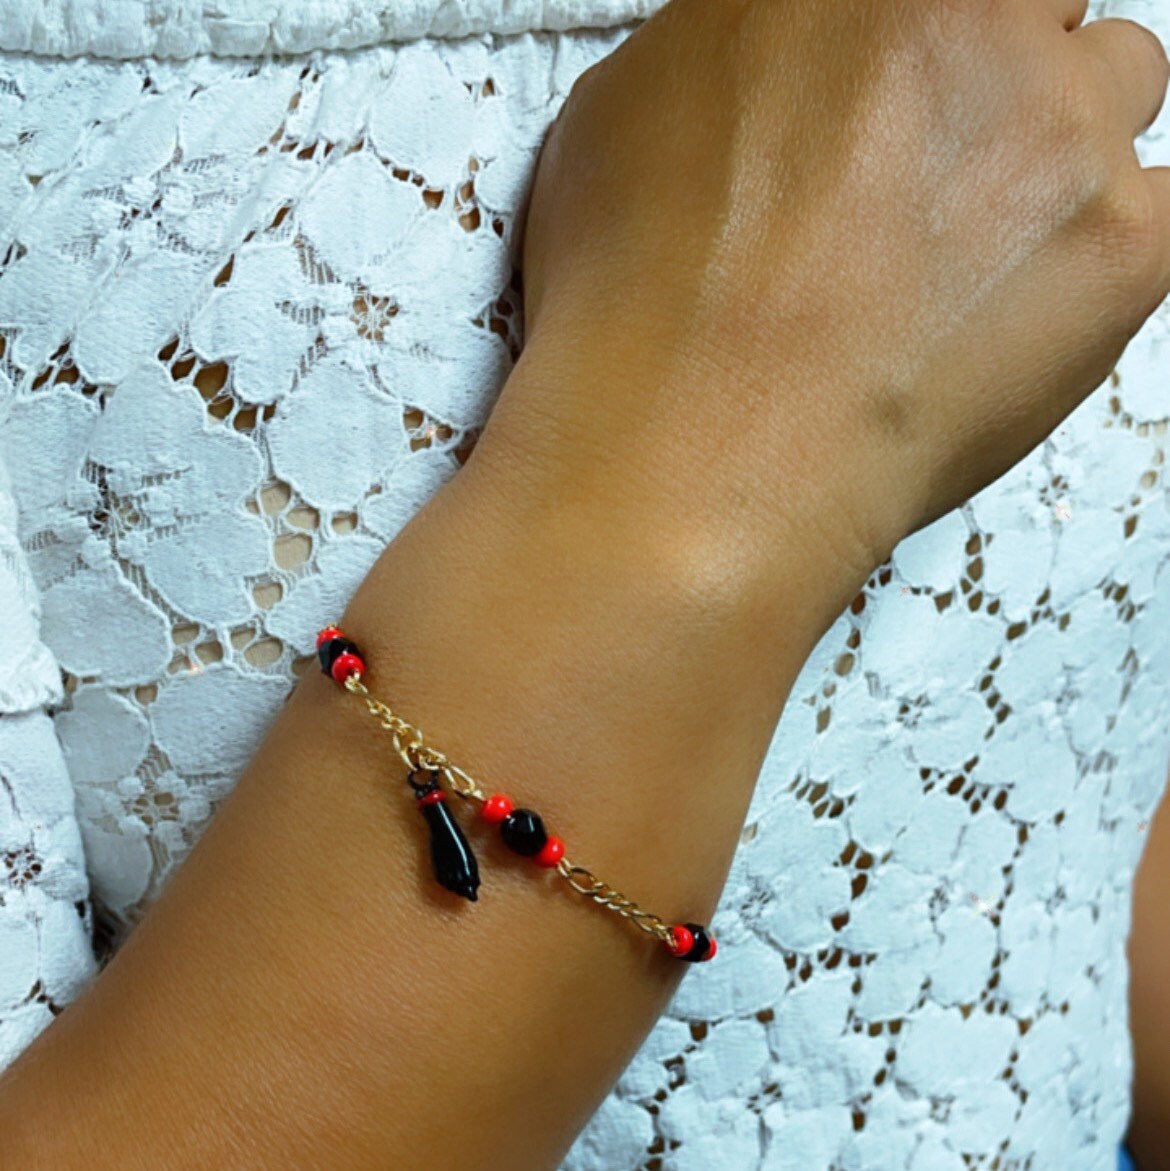 Buy Azabache Bracelet, Good Luck Bracelet Chain, Dainty Chain Bracelet,  Black & Red Beads Bracelet Online in India - Etsy